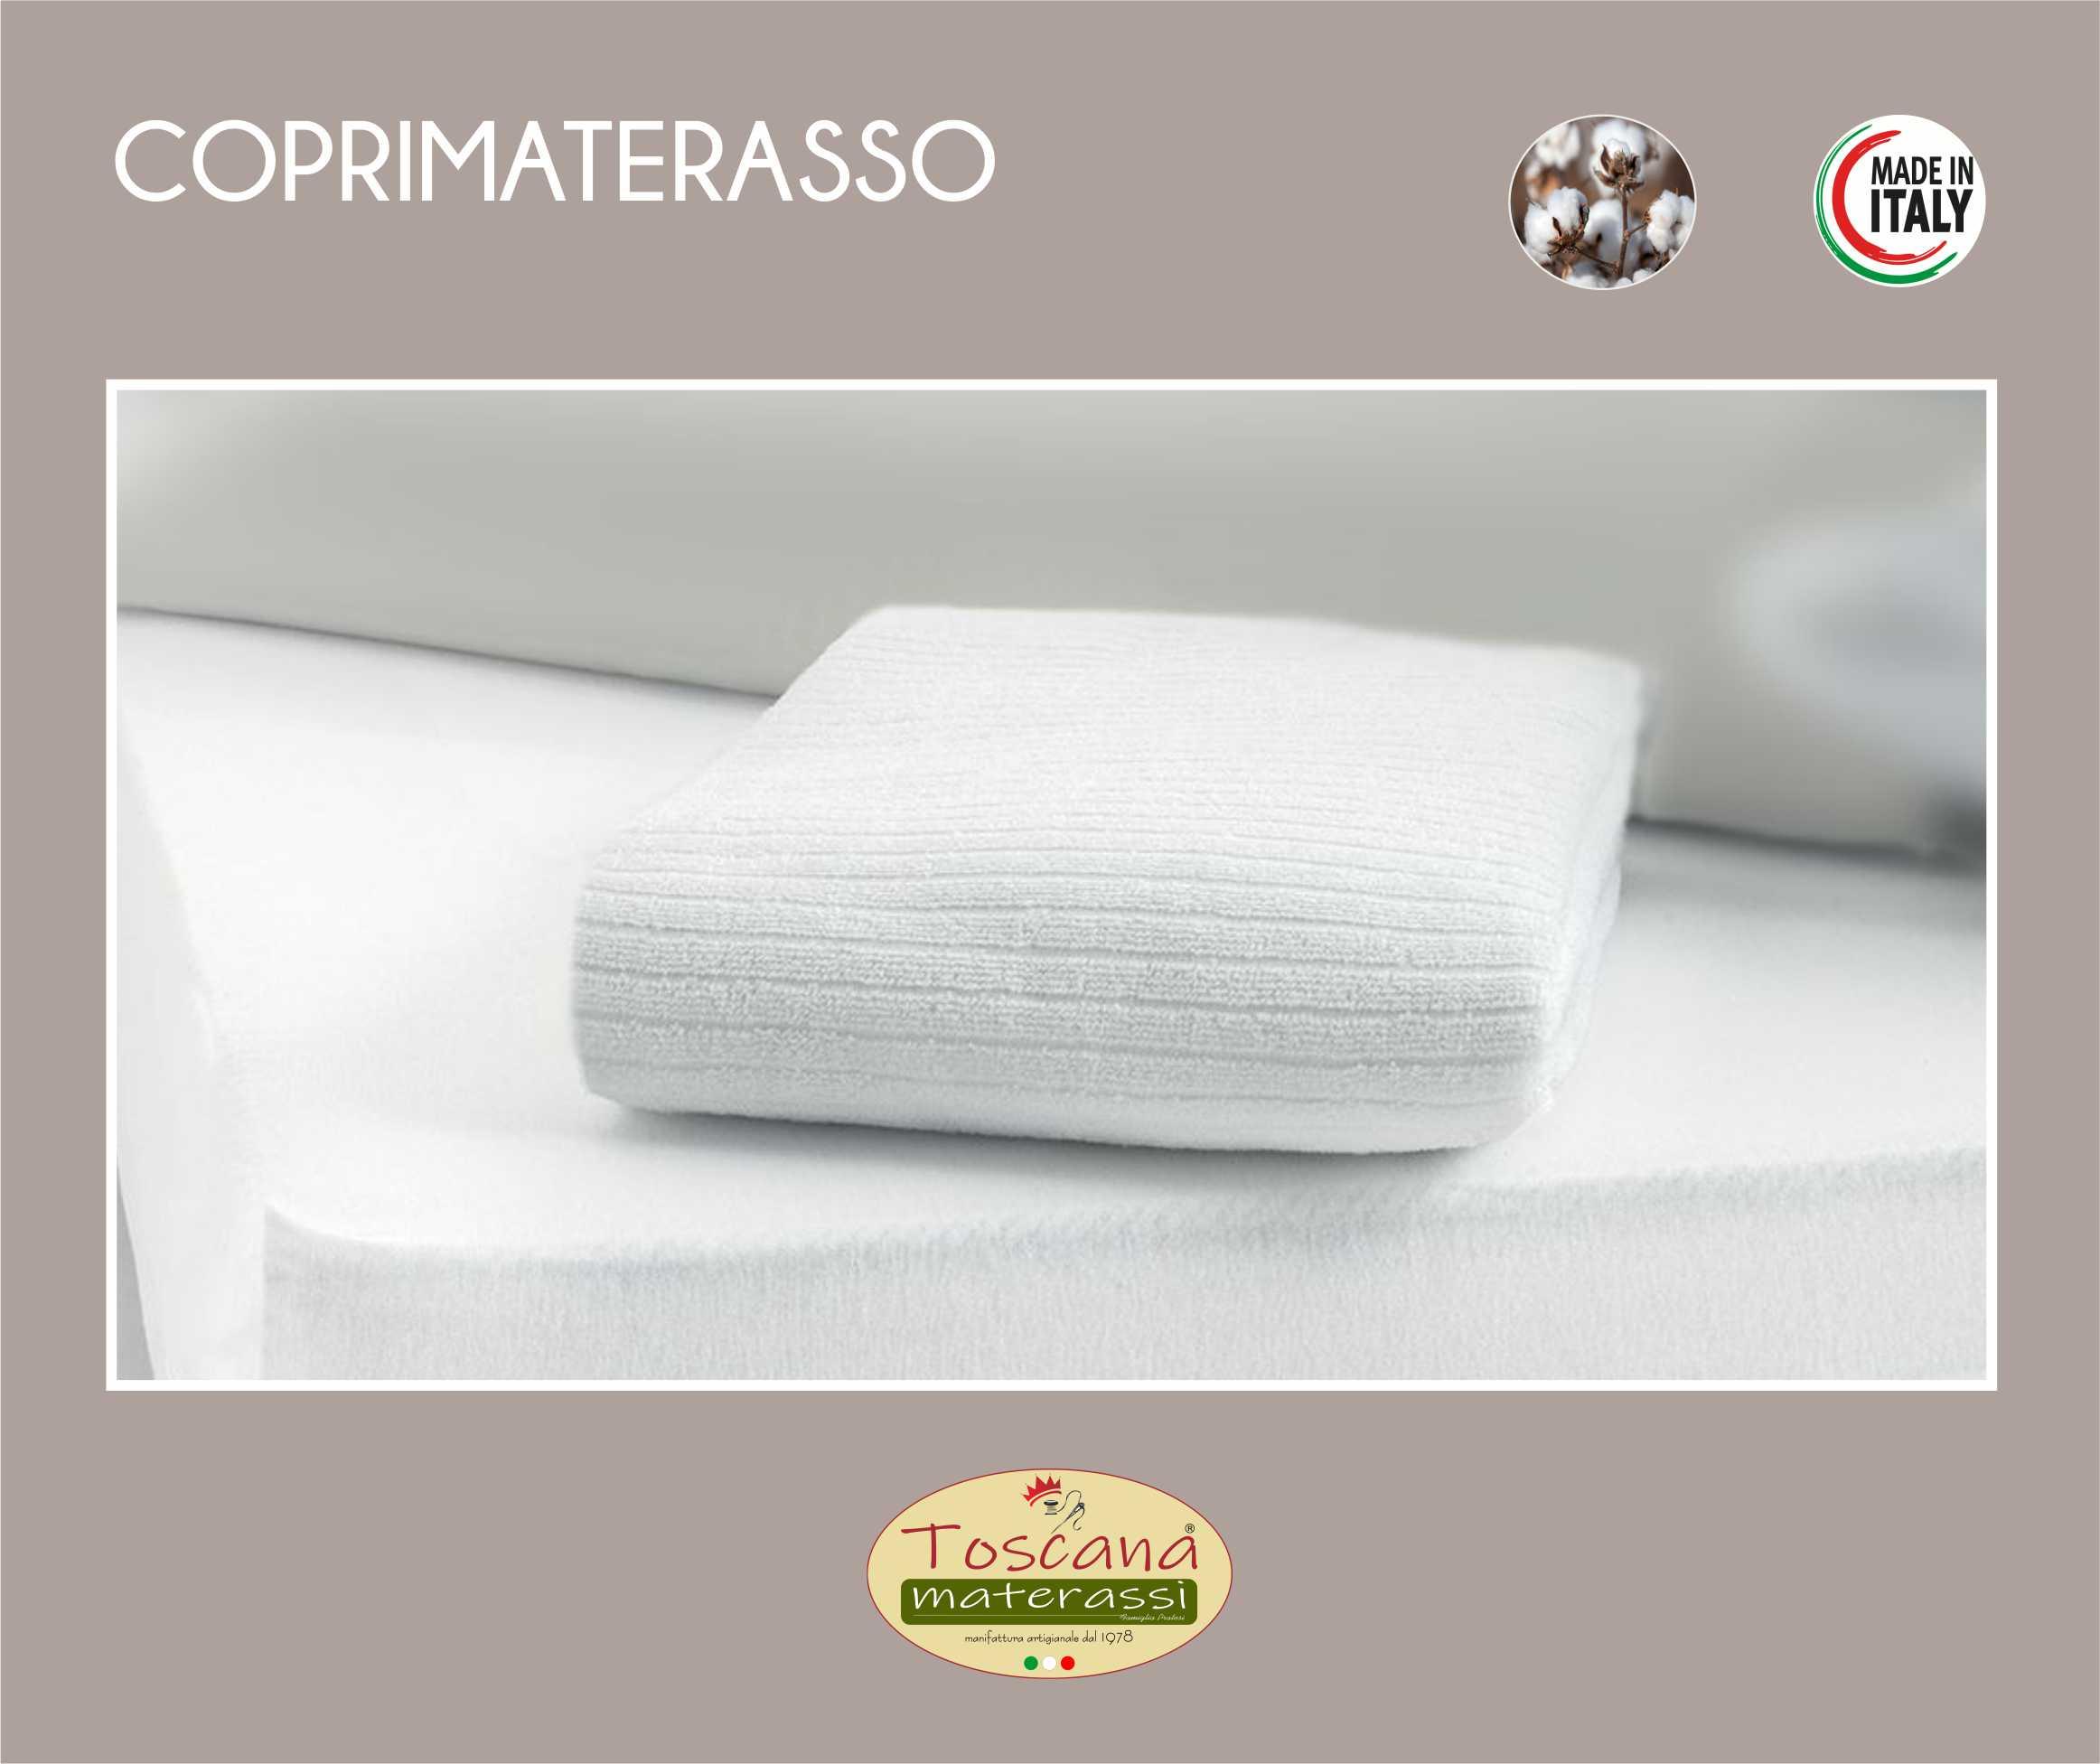 Coprimaterasso Dreams matrimoniale, 100% Made in Italy